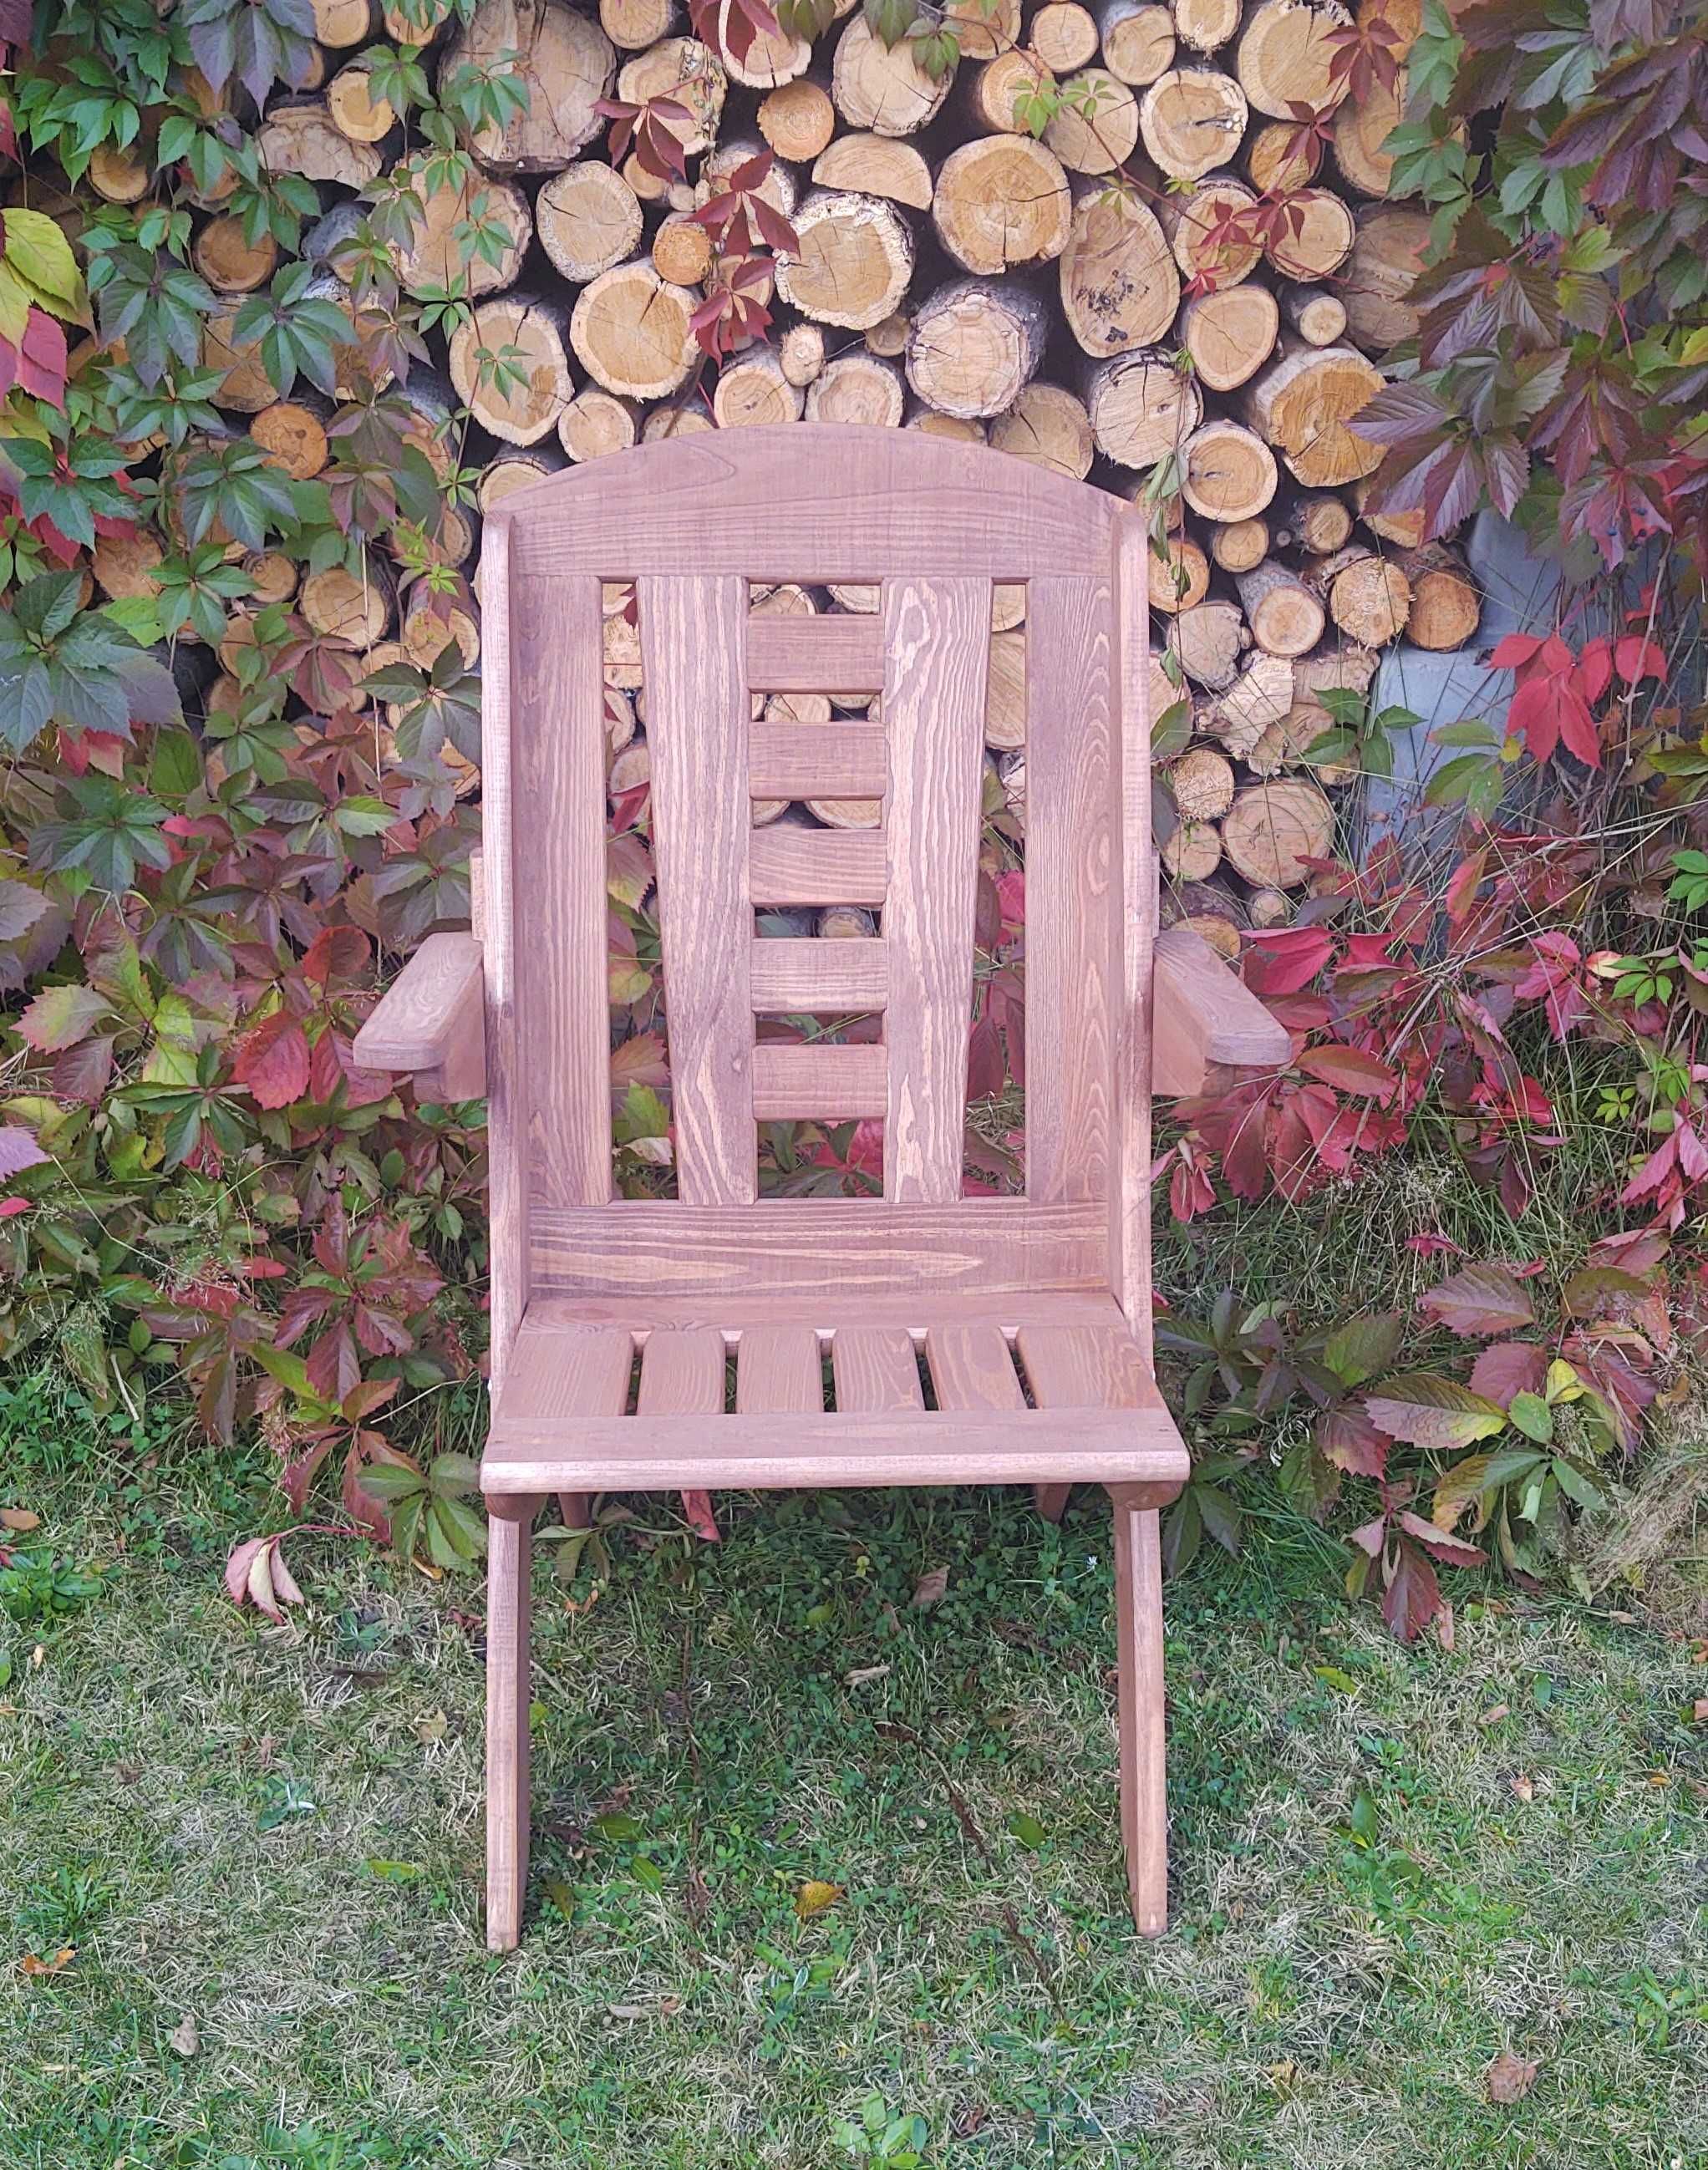 Krzesło ogrodowe drewniane składane, tarasowe X lamel nr 8